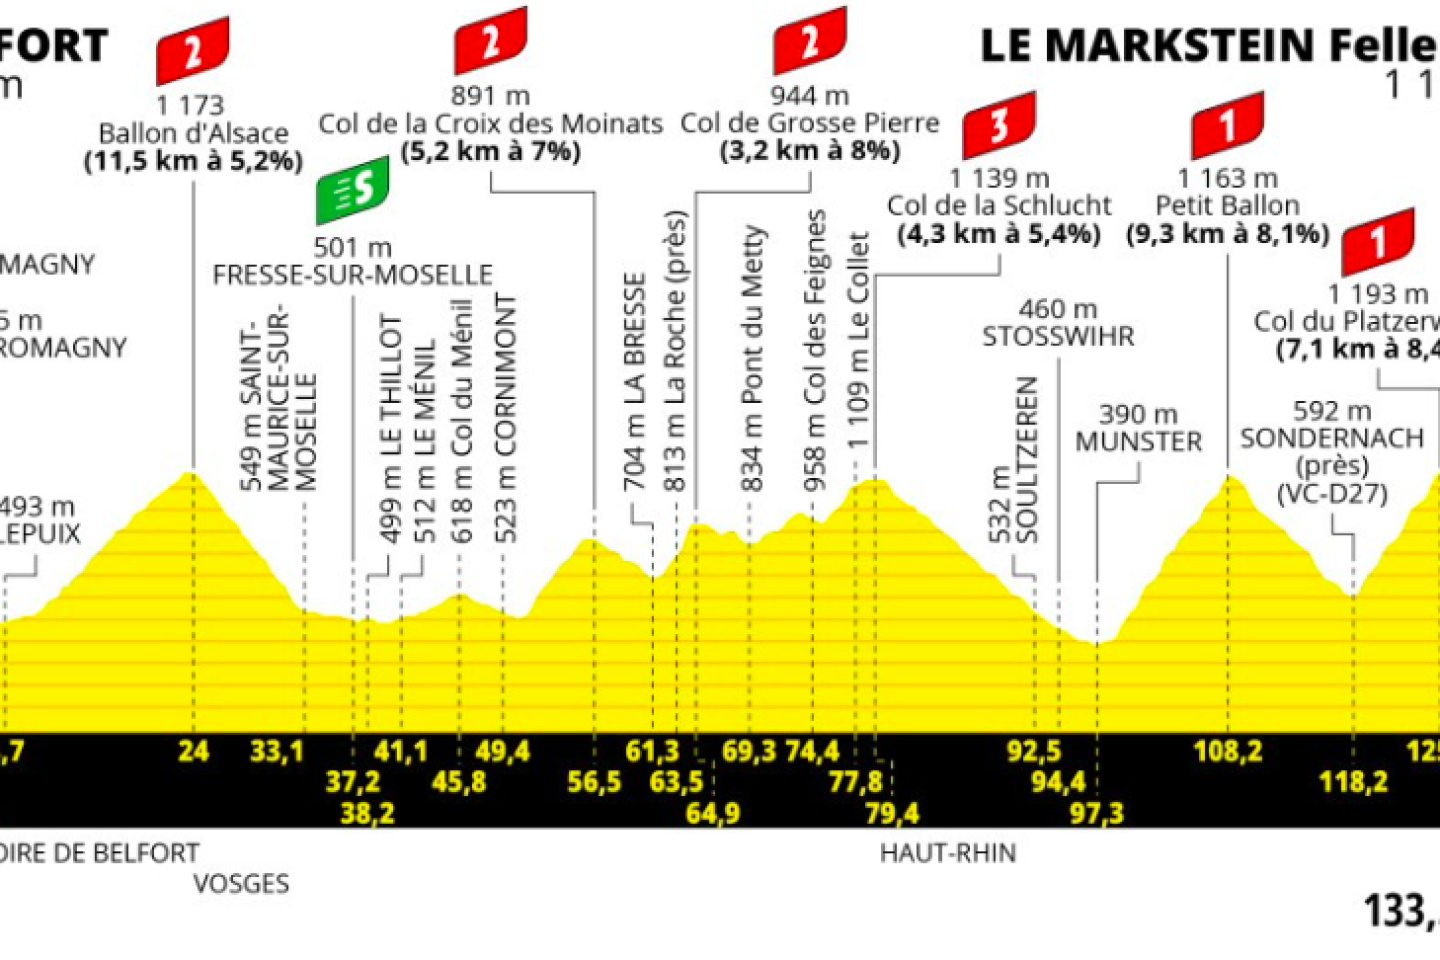 Tour de France 2023 : le parcours de la vingtième étape entre Belfort et Le Markstein Fellering